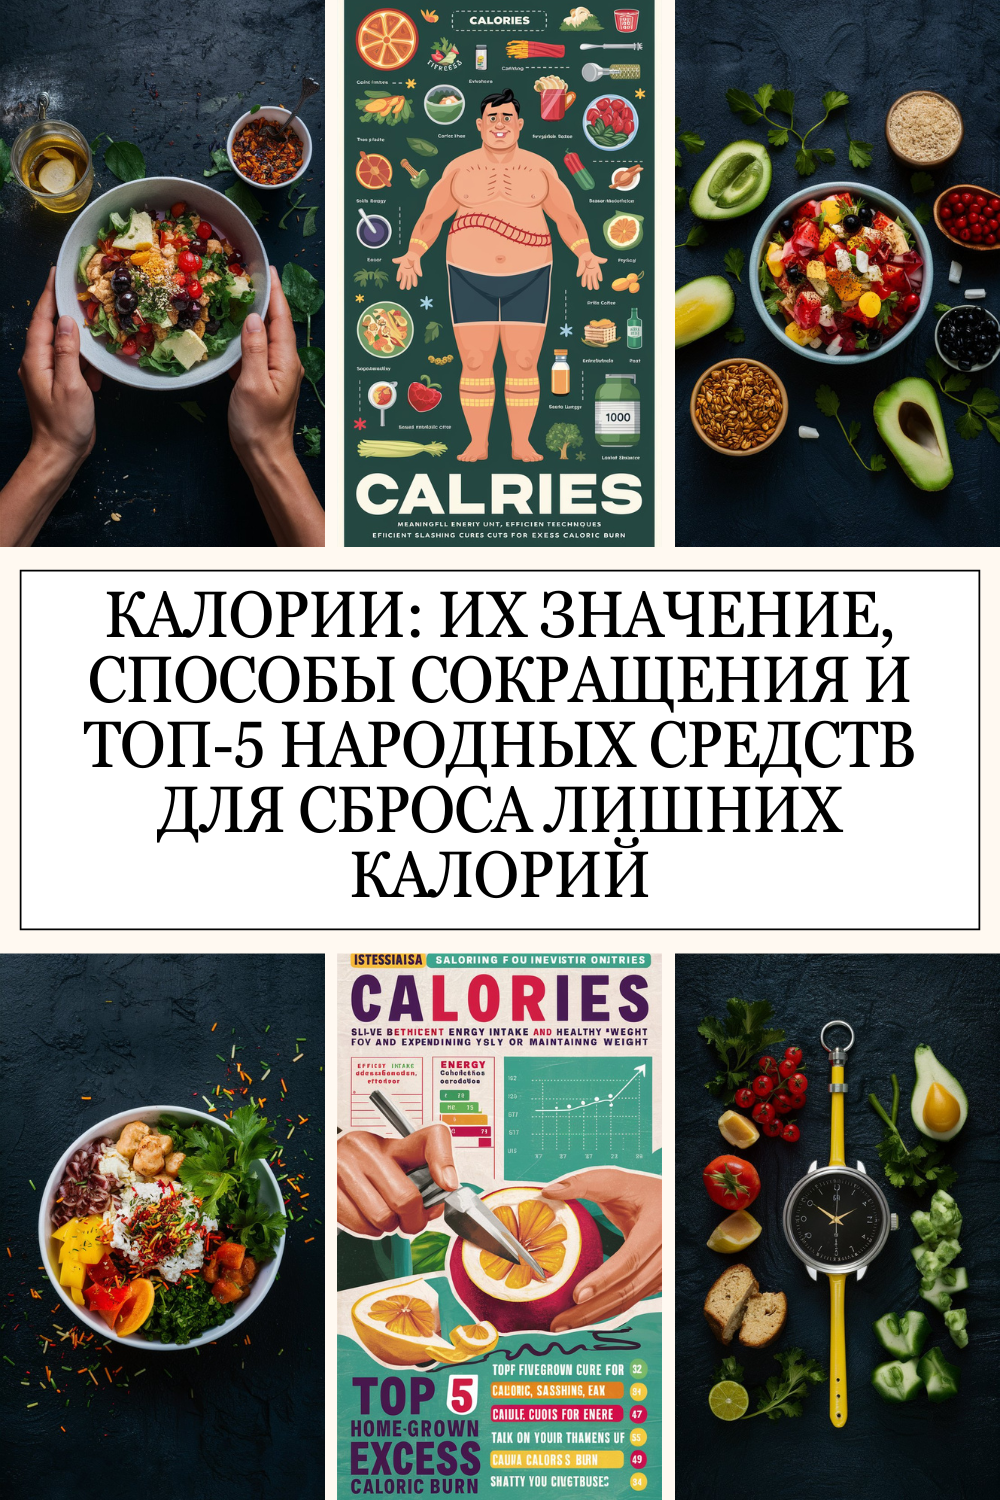 Что такое калории? Калории: их значение, способы сокращения и топ-5 народных средств для сброса лишних калорий.